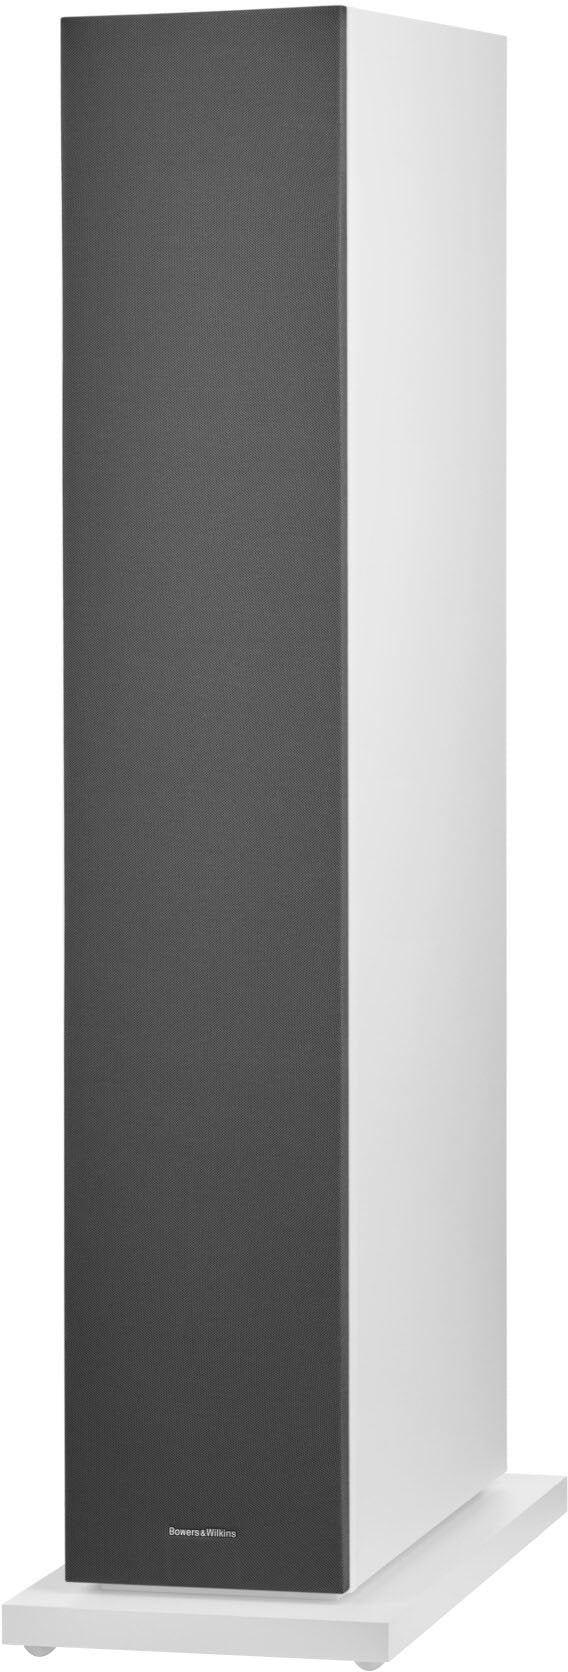 Bowers & Wilkins - 600 S3 Series 3-Way Floorstanding Loudspeaker (Each) - White_1